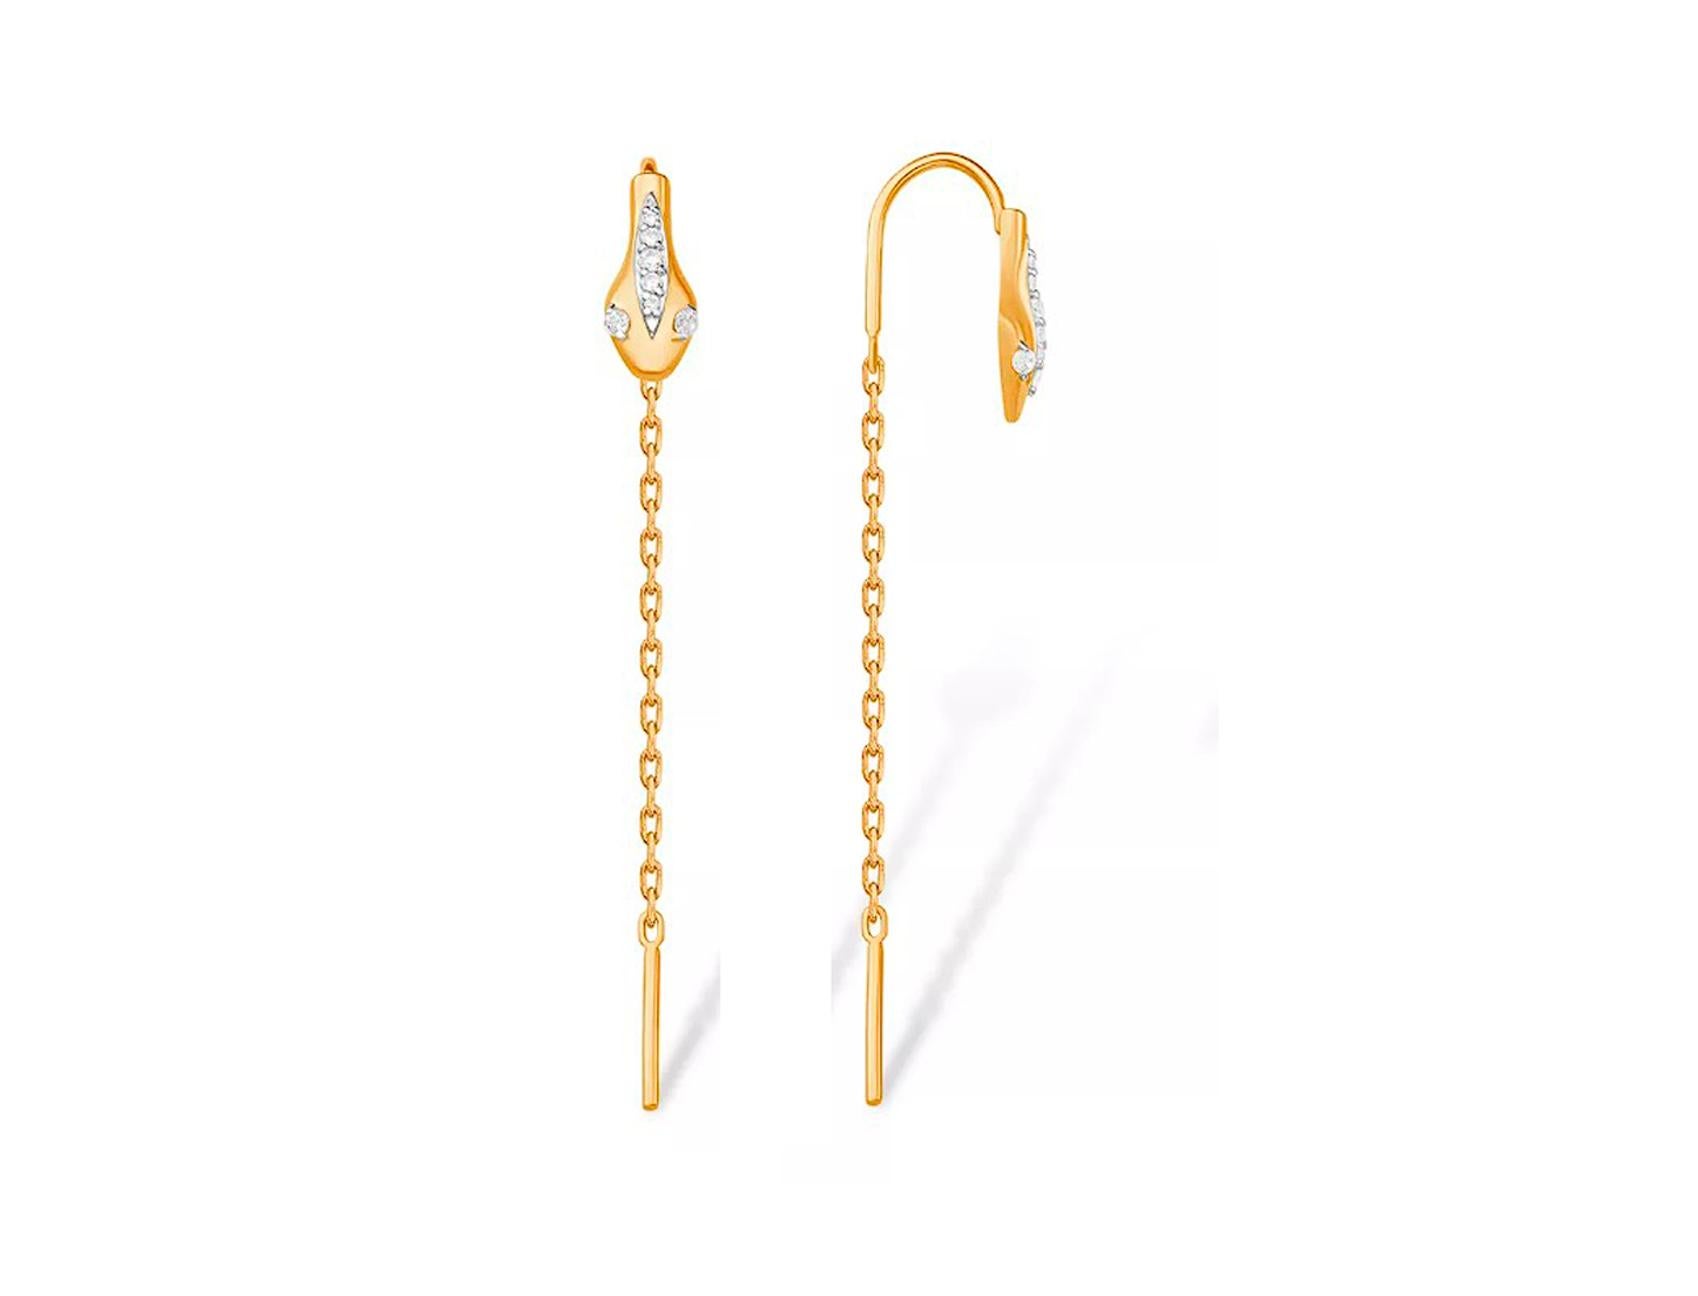 14k Gold Threader Snake Earrings. 
Gold Drop Earring Gold Chain Earrings. Long Drop Gold Earrings. Modern Earrings 14k gold earrings. Snake Threader Earrings. Animal threader earrings. Gold Chain Dangle Earrings. Beautifull earrings for everyday